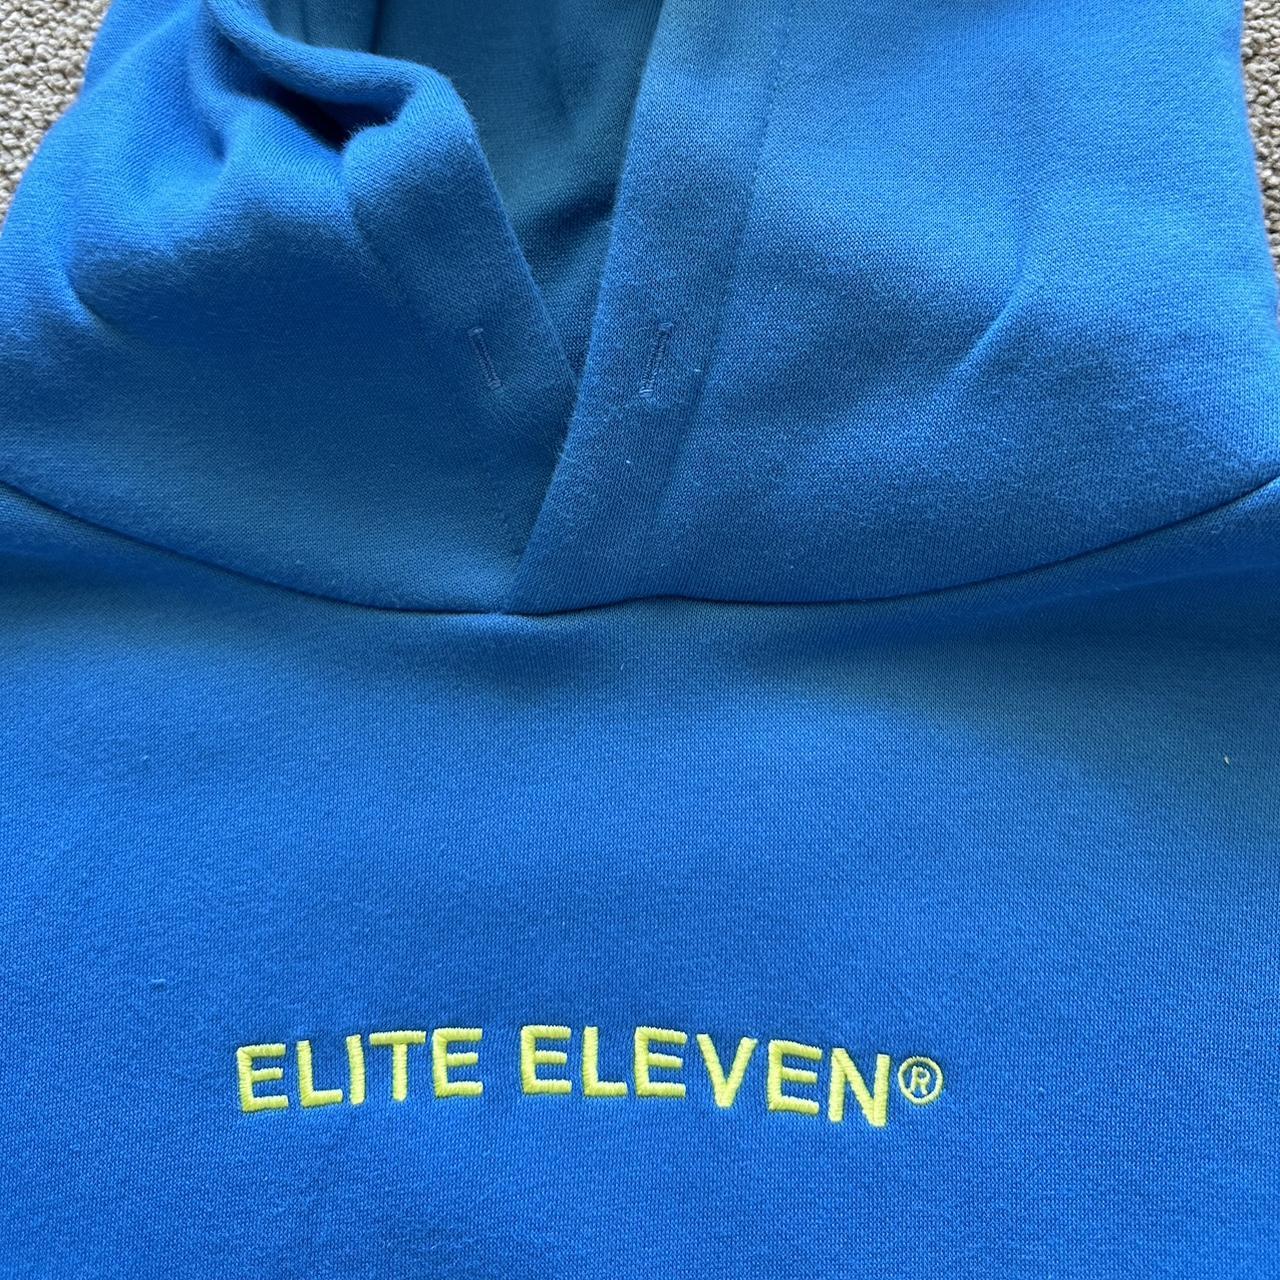 Elite eleven hoodie - Depop